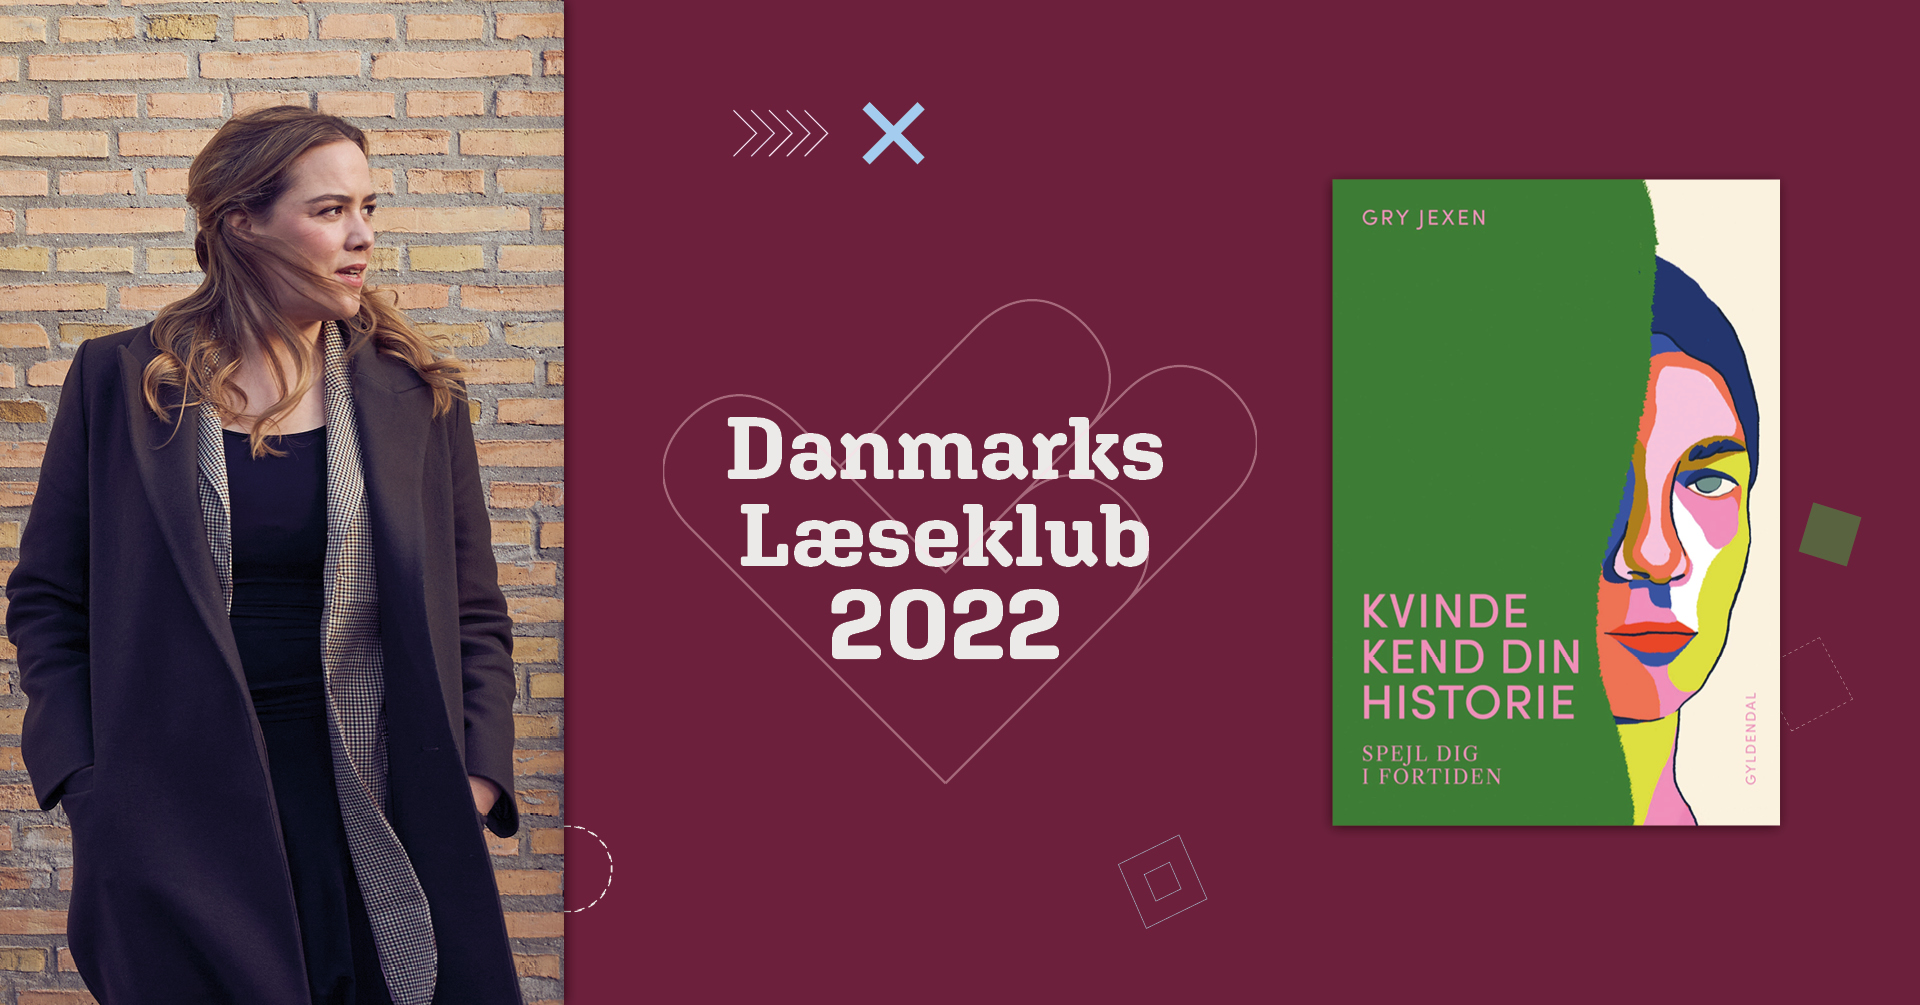 Gry Jexen står med blæst i håret og kigger til højre. Her ses Danmarks Læseklub 2022's logo og forsiden af "Kvinde kend din historie".